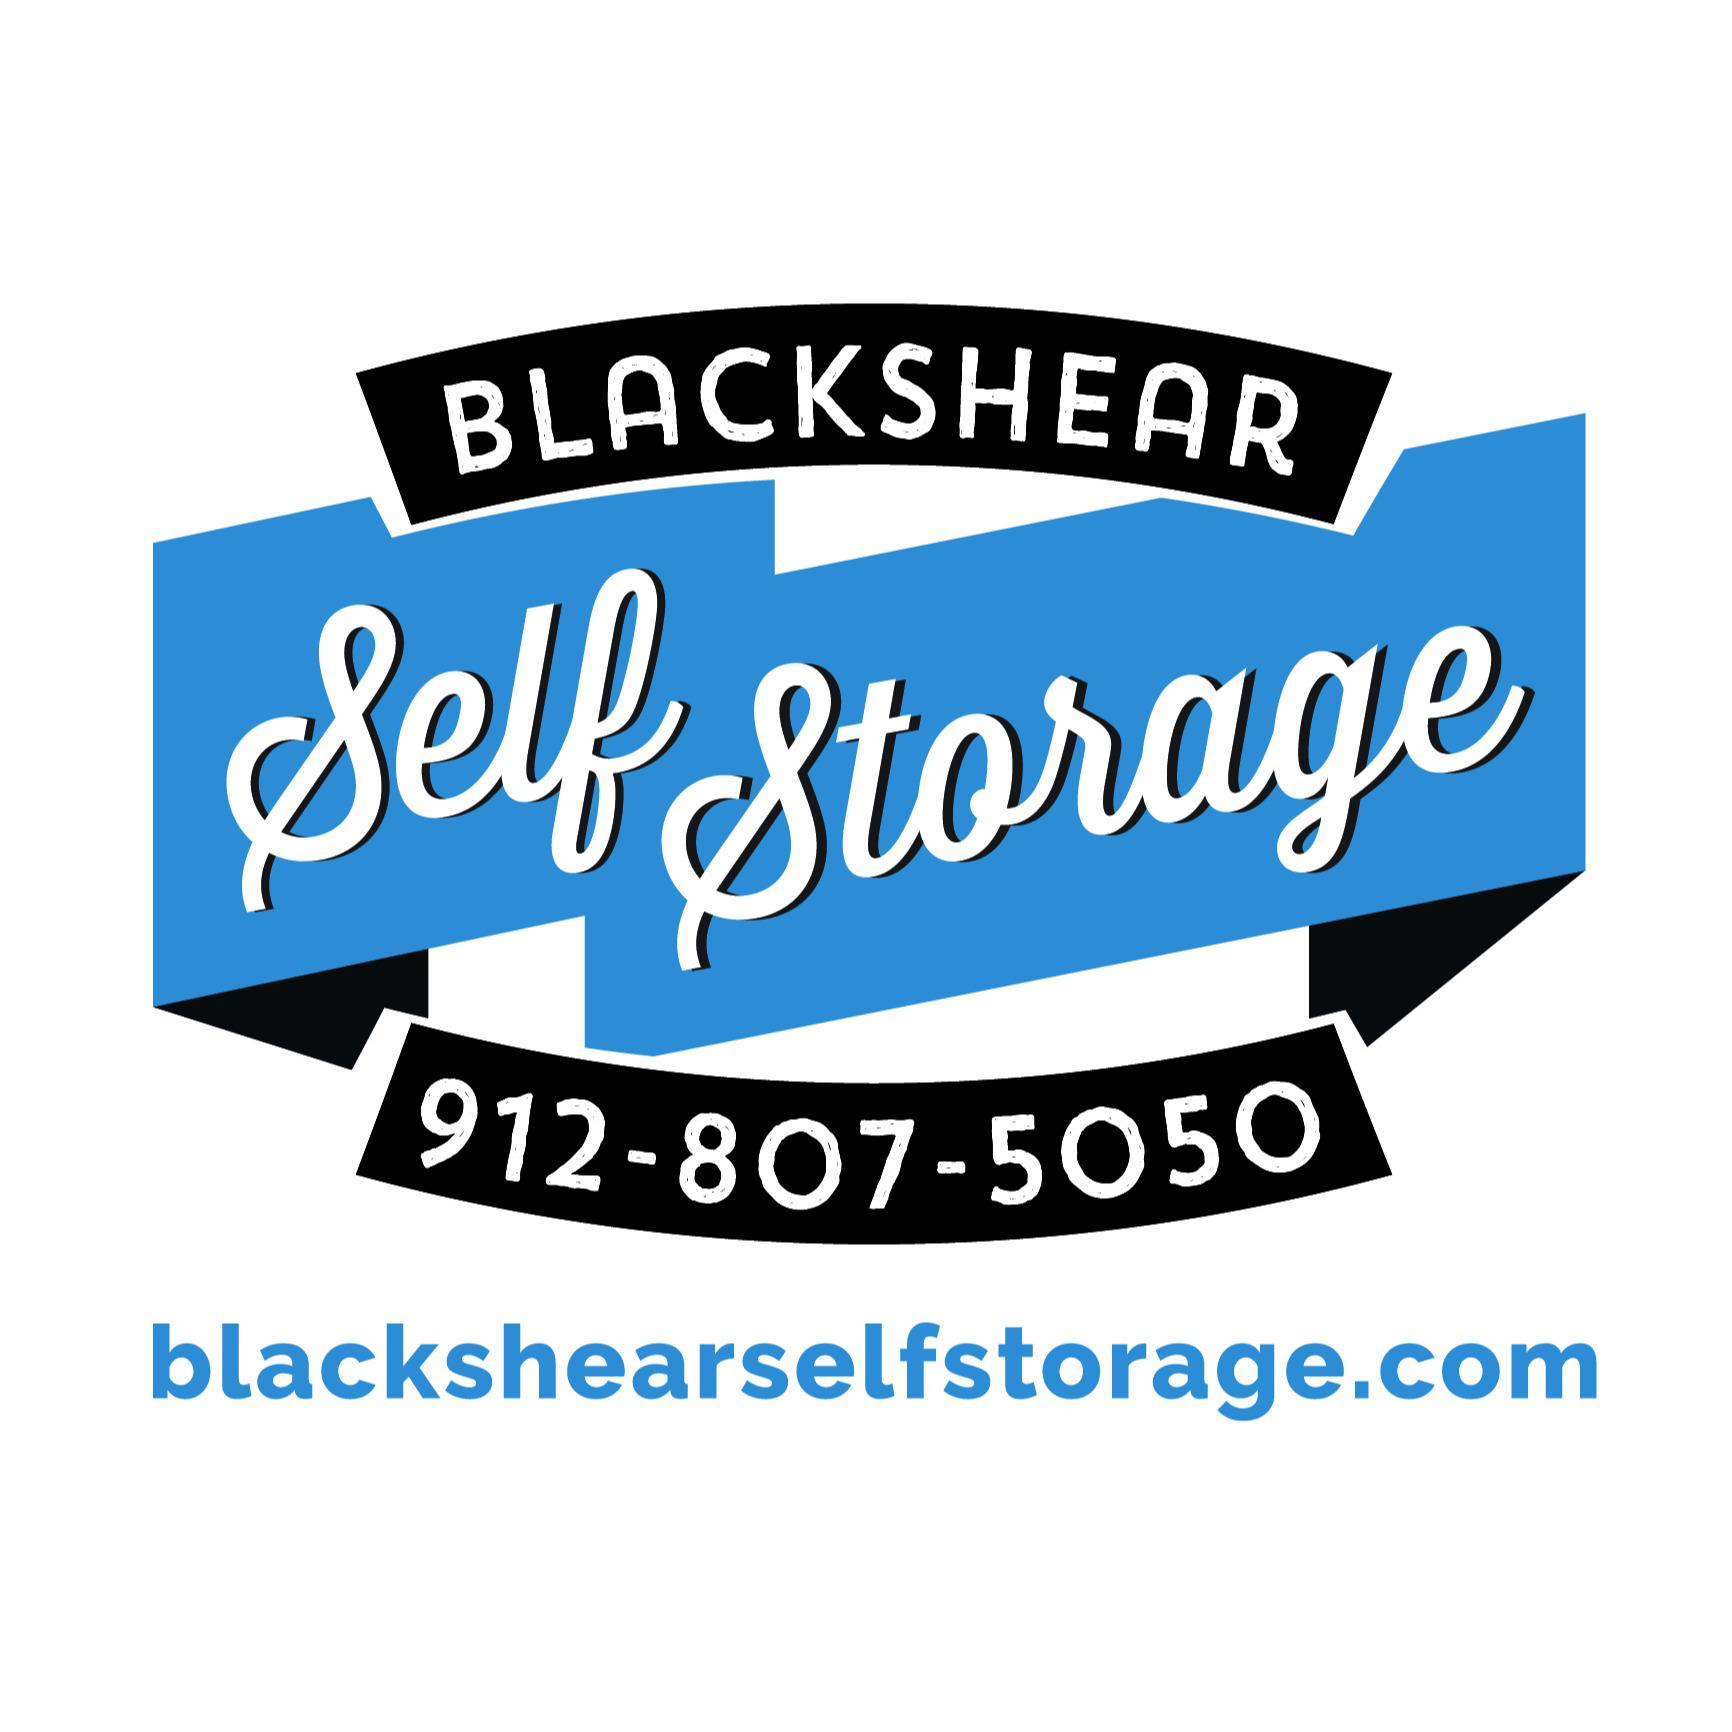 Blackshear Self Storage